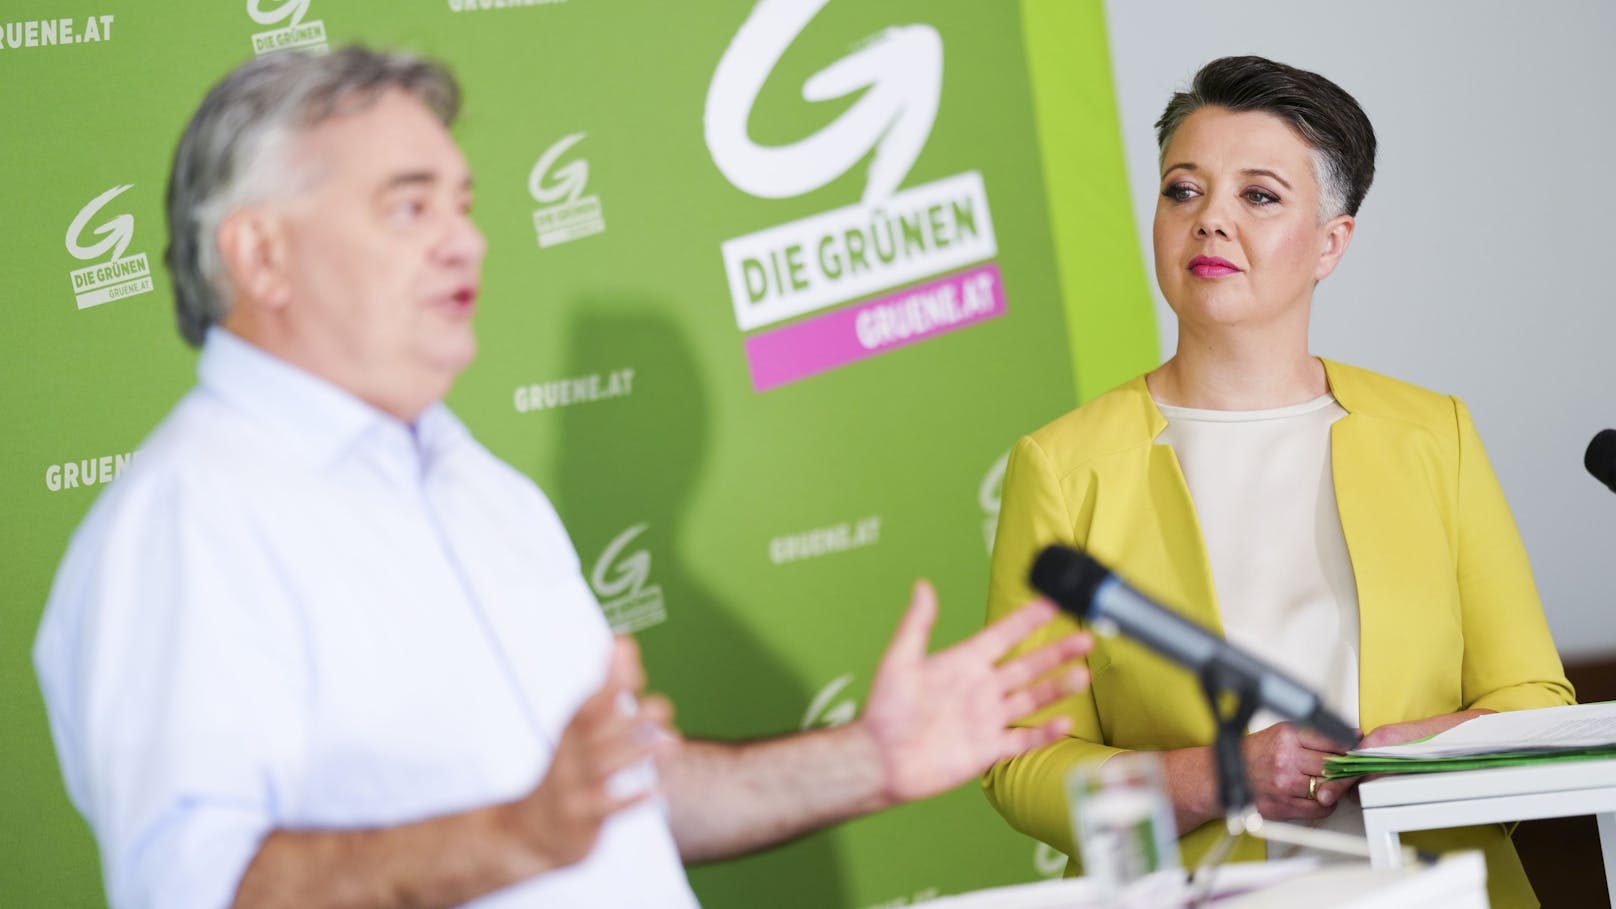 "Nicht nachvollziehbar": Grüne attackieren jetzt ÖVP